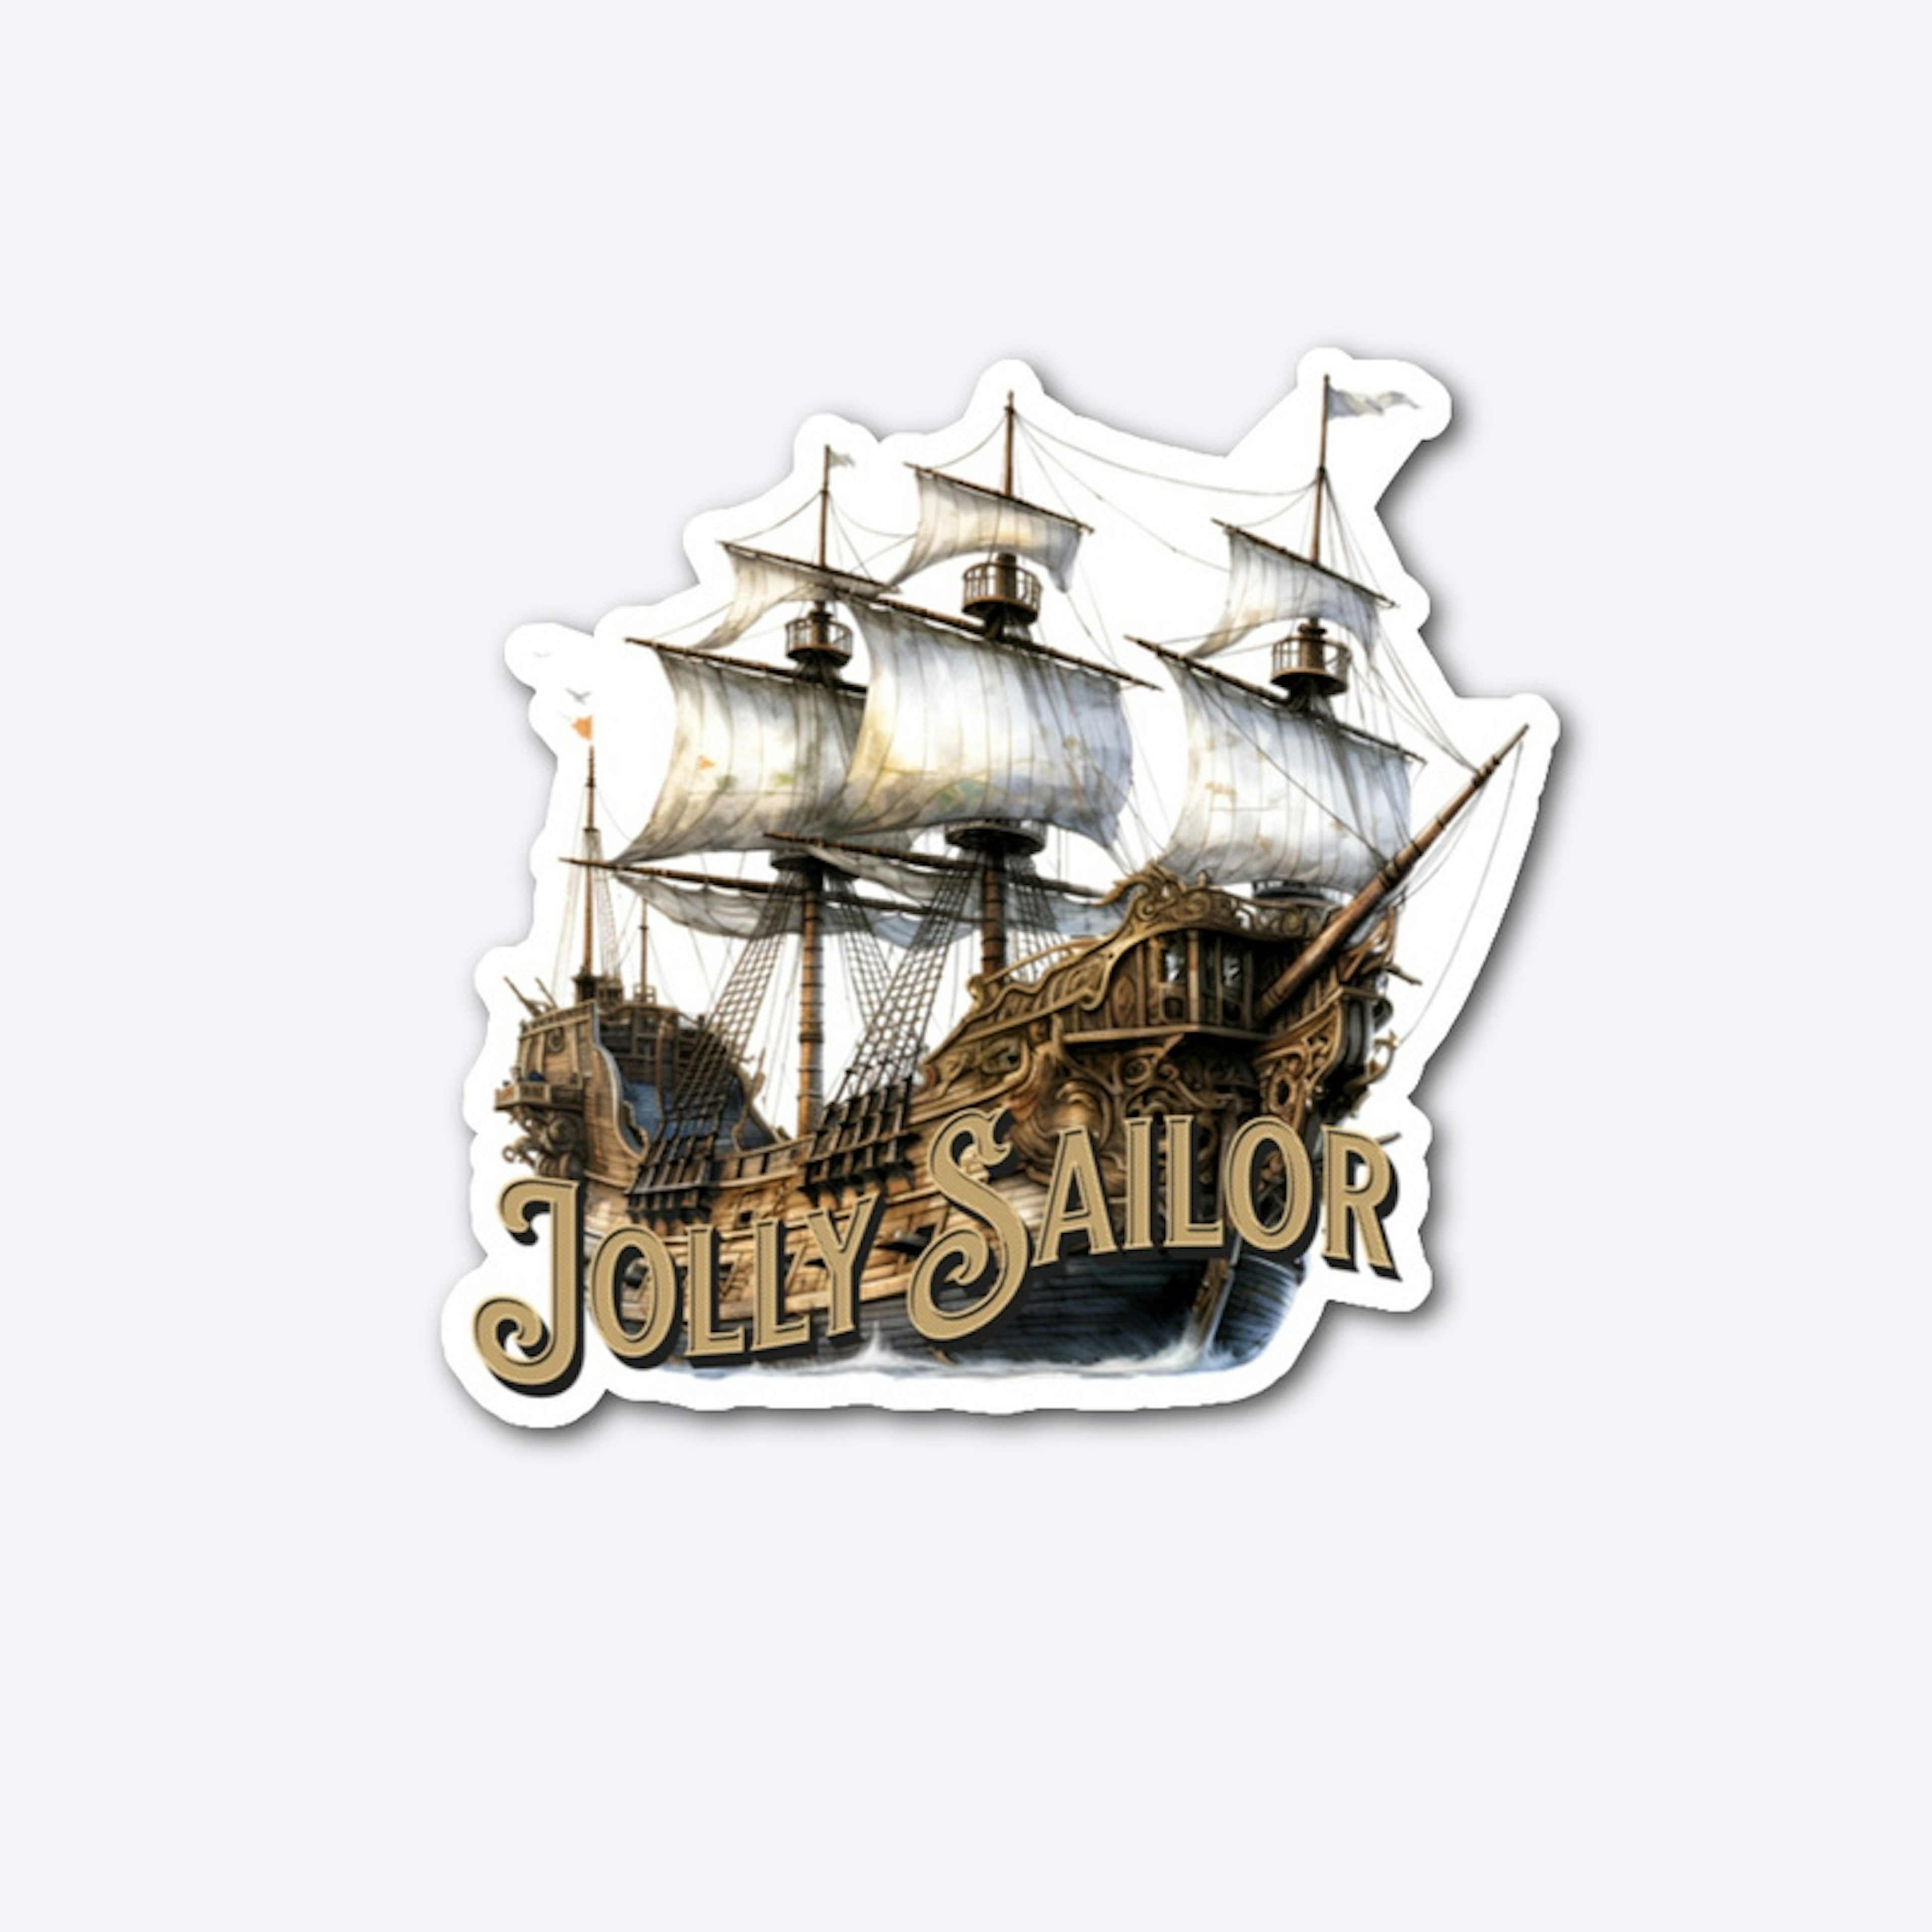 The Jolly Sailor